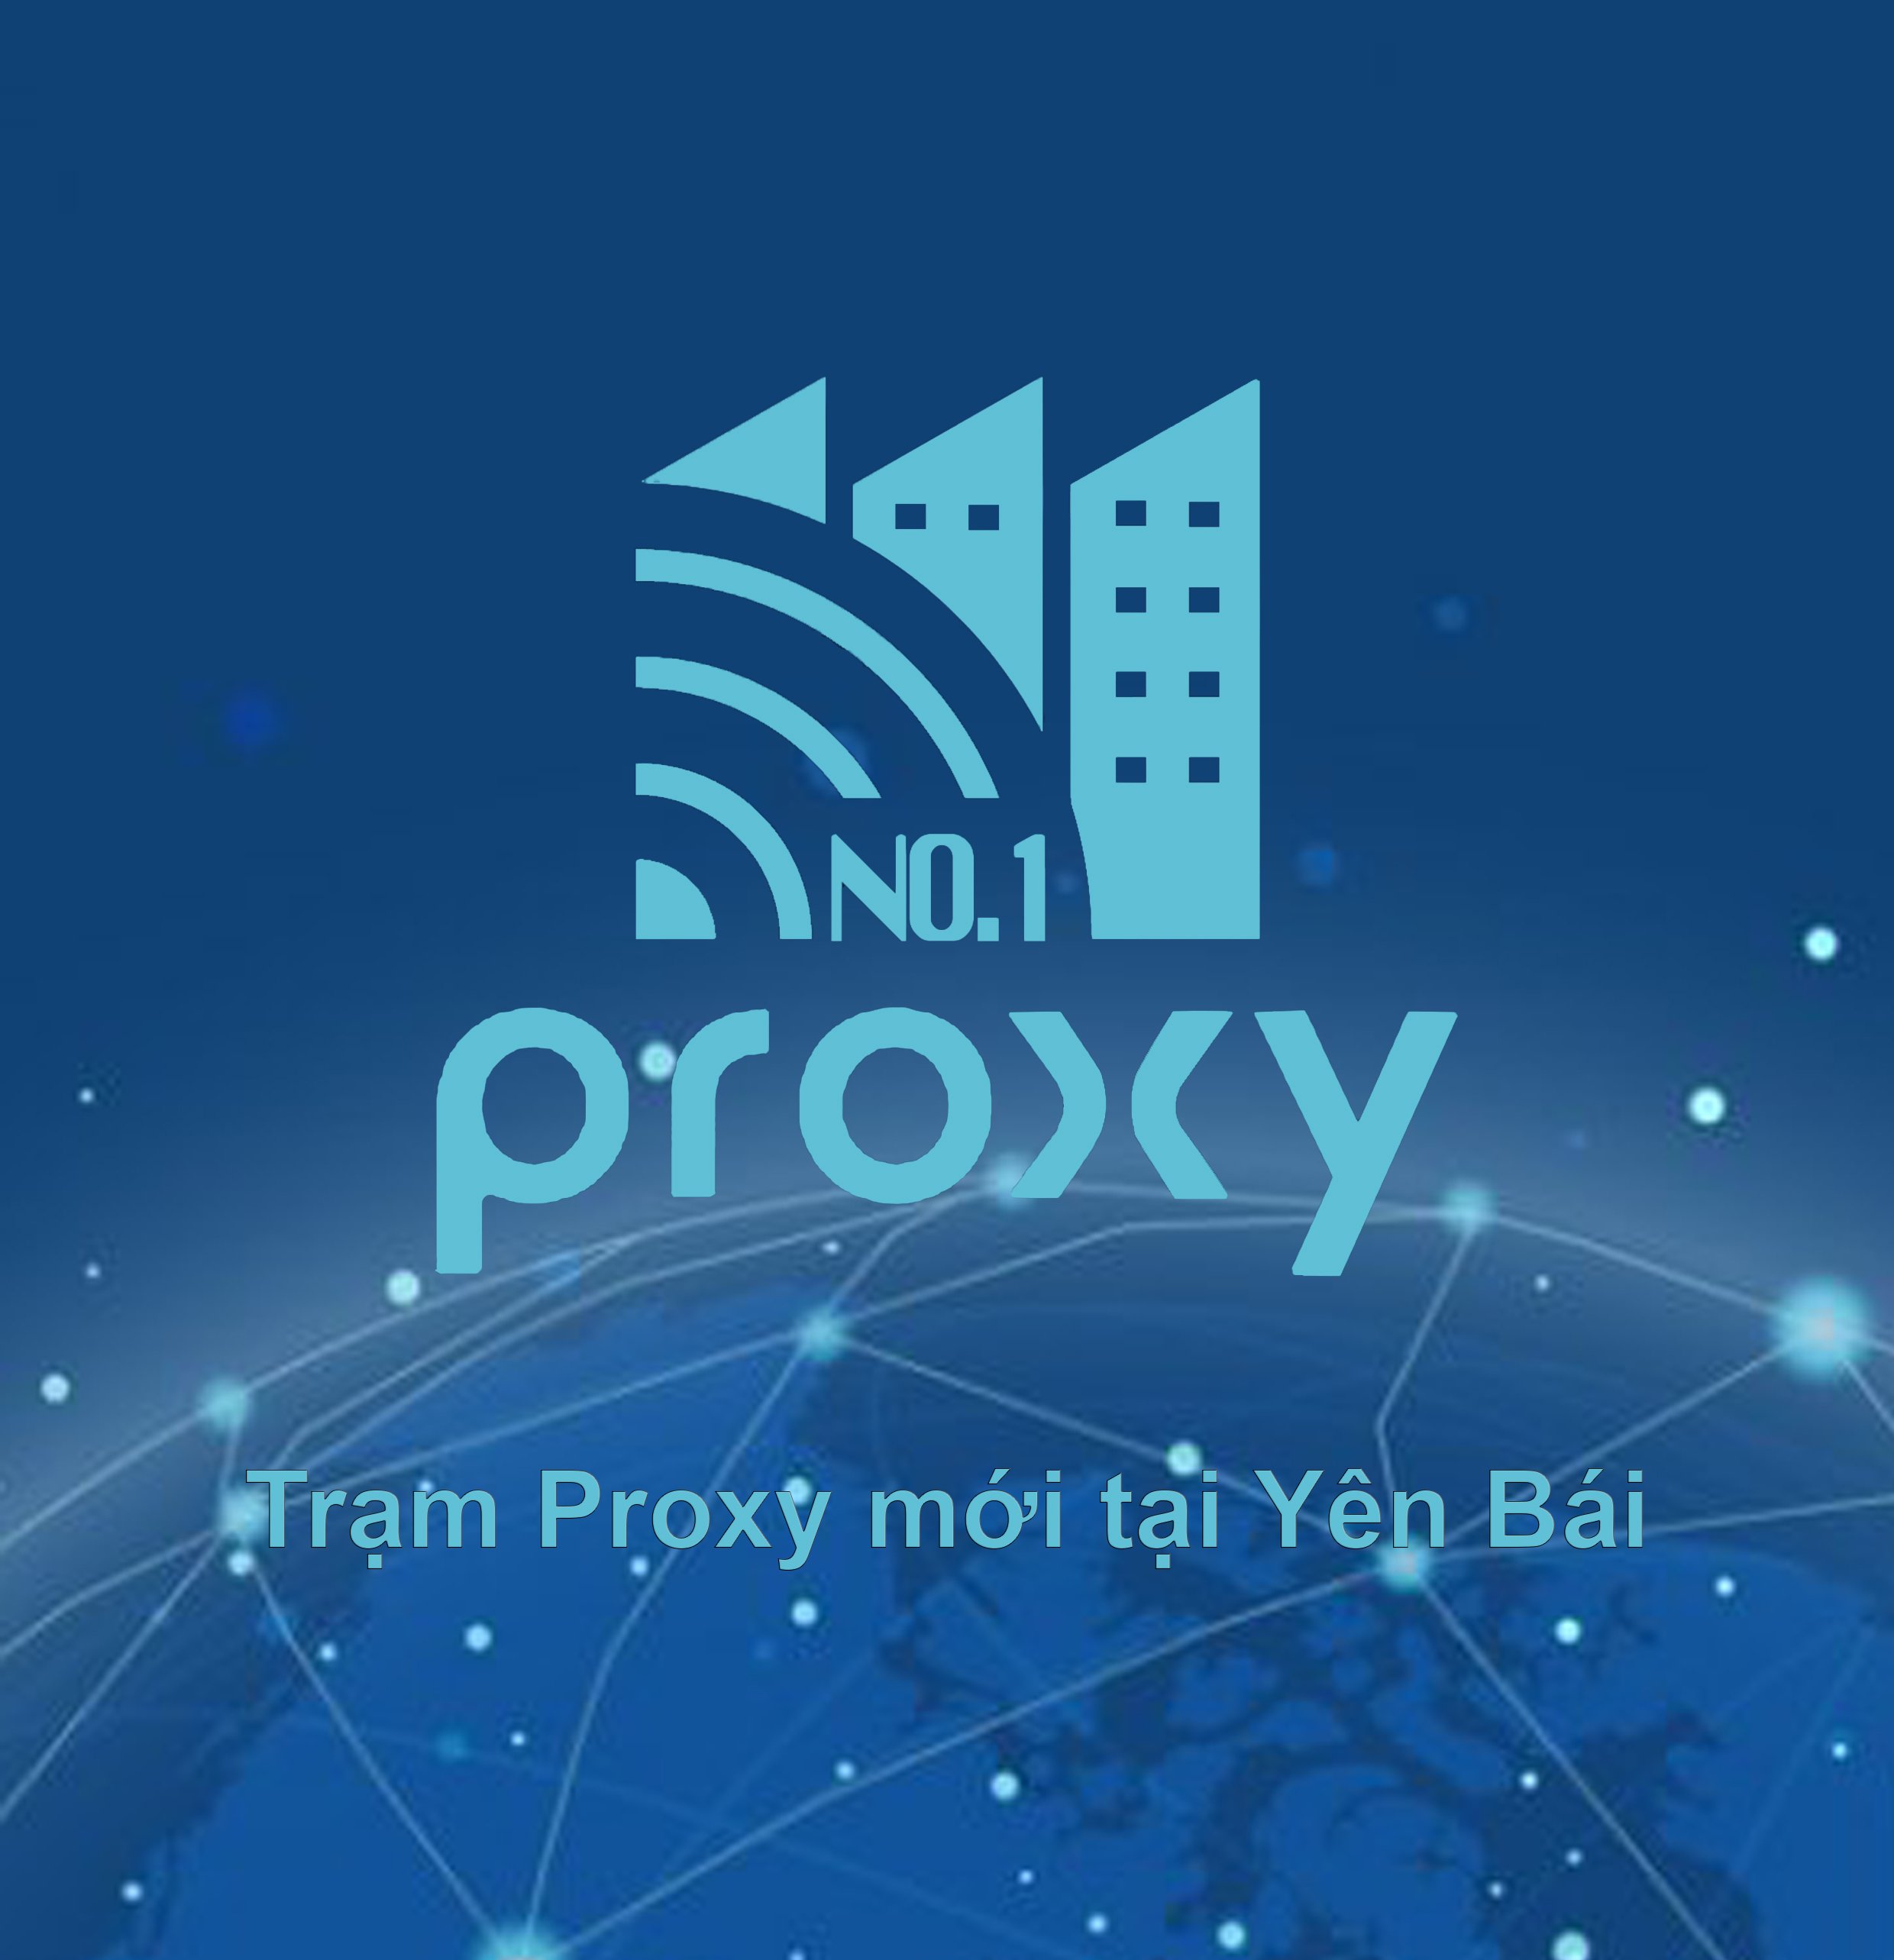 ( Thông báo Proxy No.1 ) Hiện tại chúng tôi đã mở thêm trạm Proxy 4G tại Yên Bái